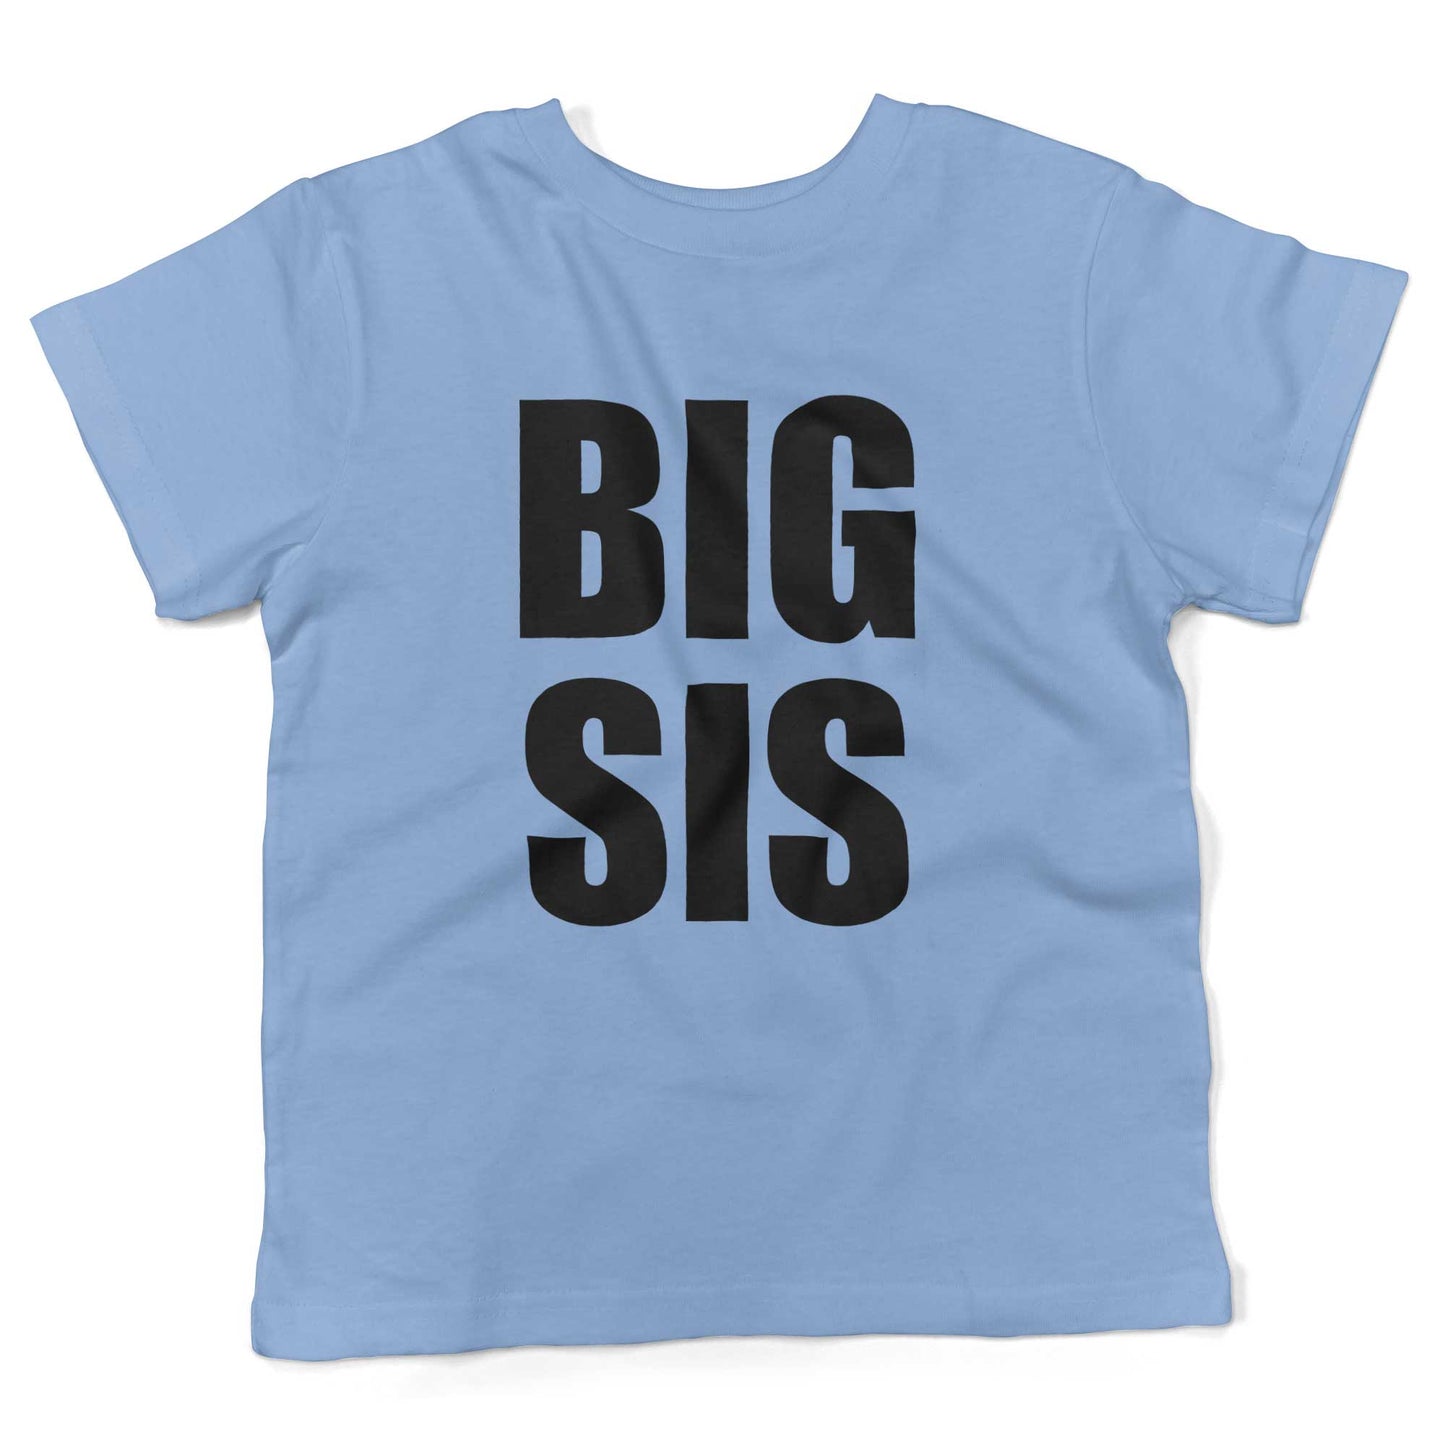 BIG SIS Toddler Shirt-Organic Baby Blue-2T